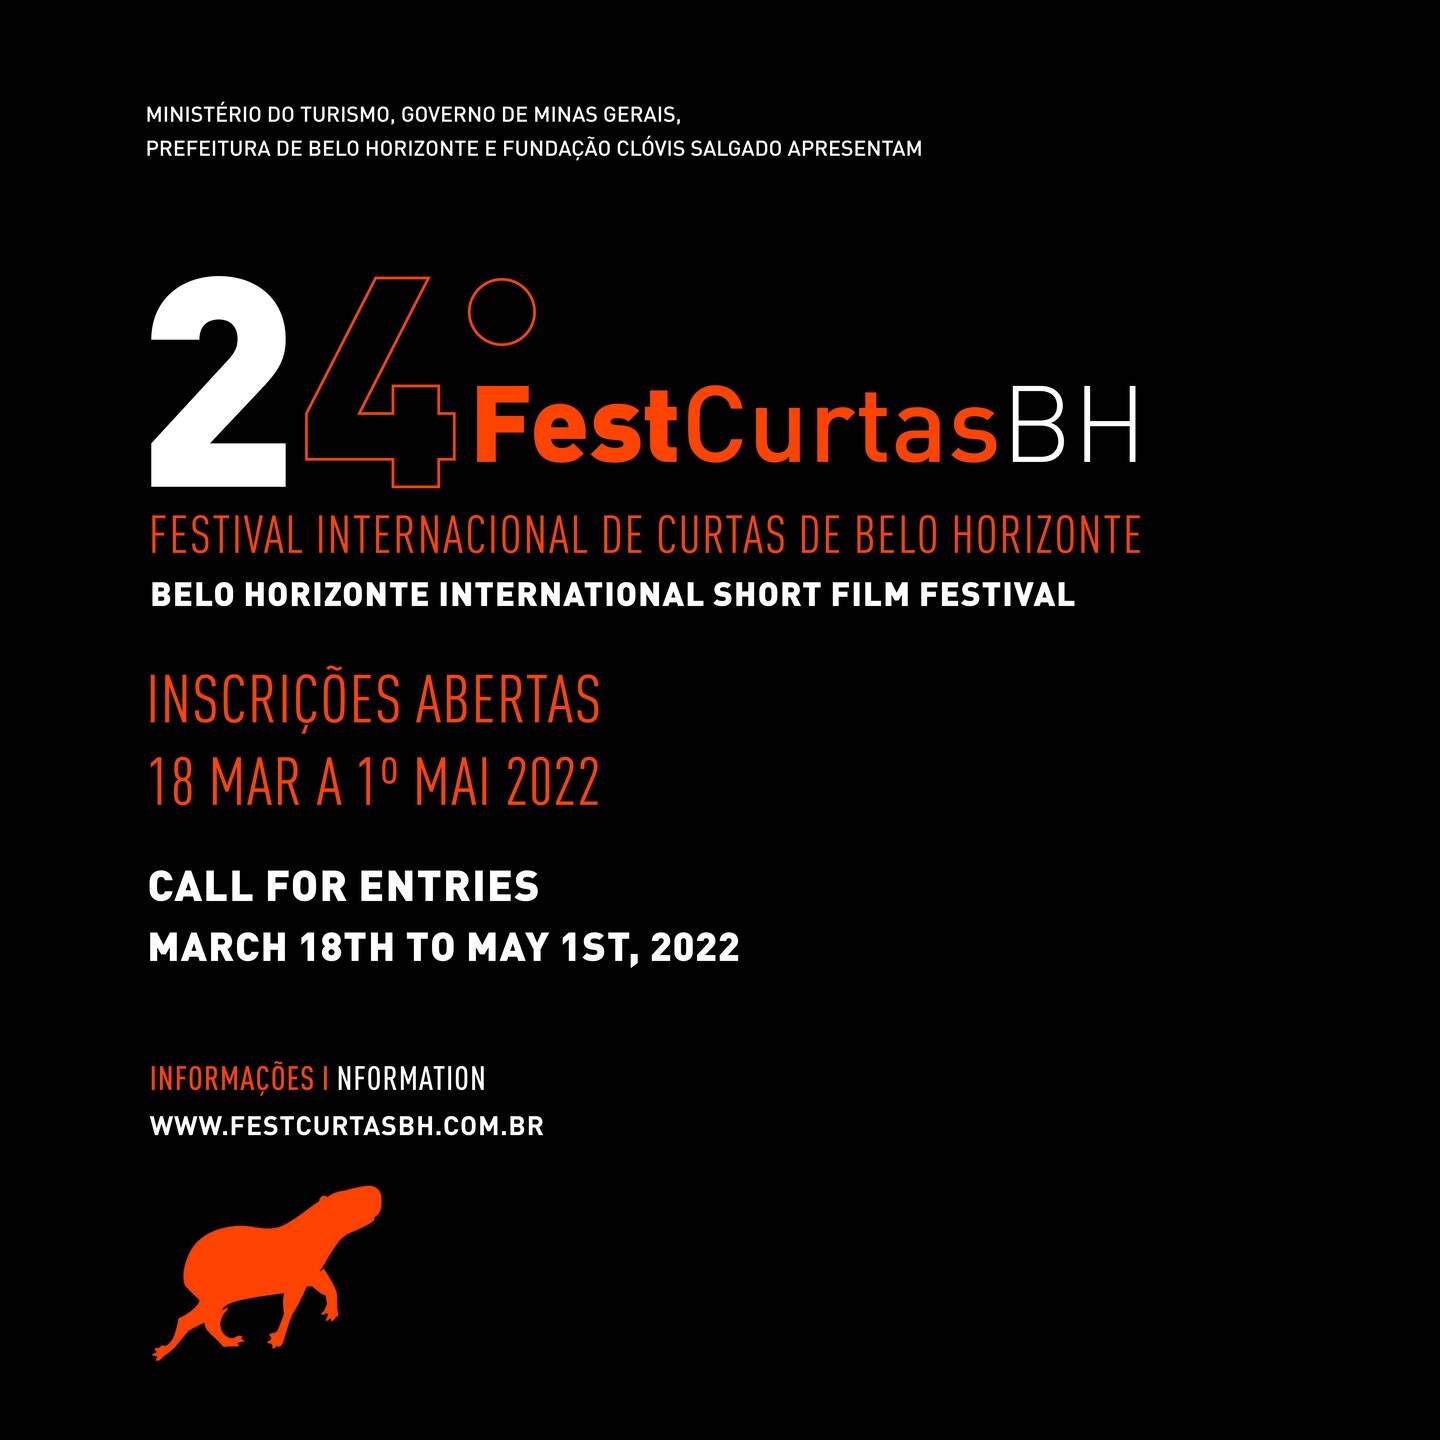 24º FestCurtasBH – Festival Internacional de Curtas de Belo Horizonte